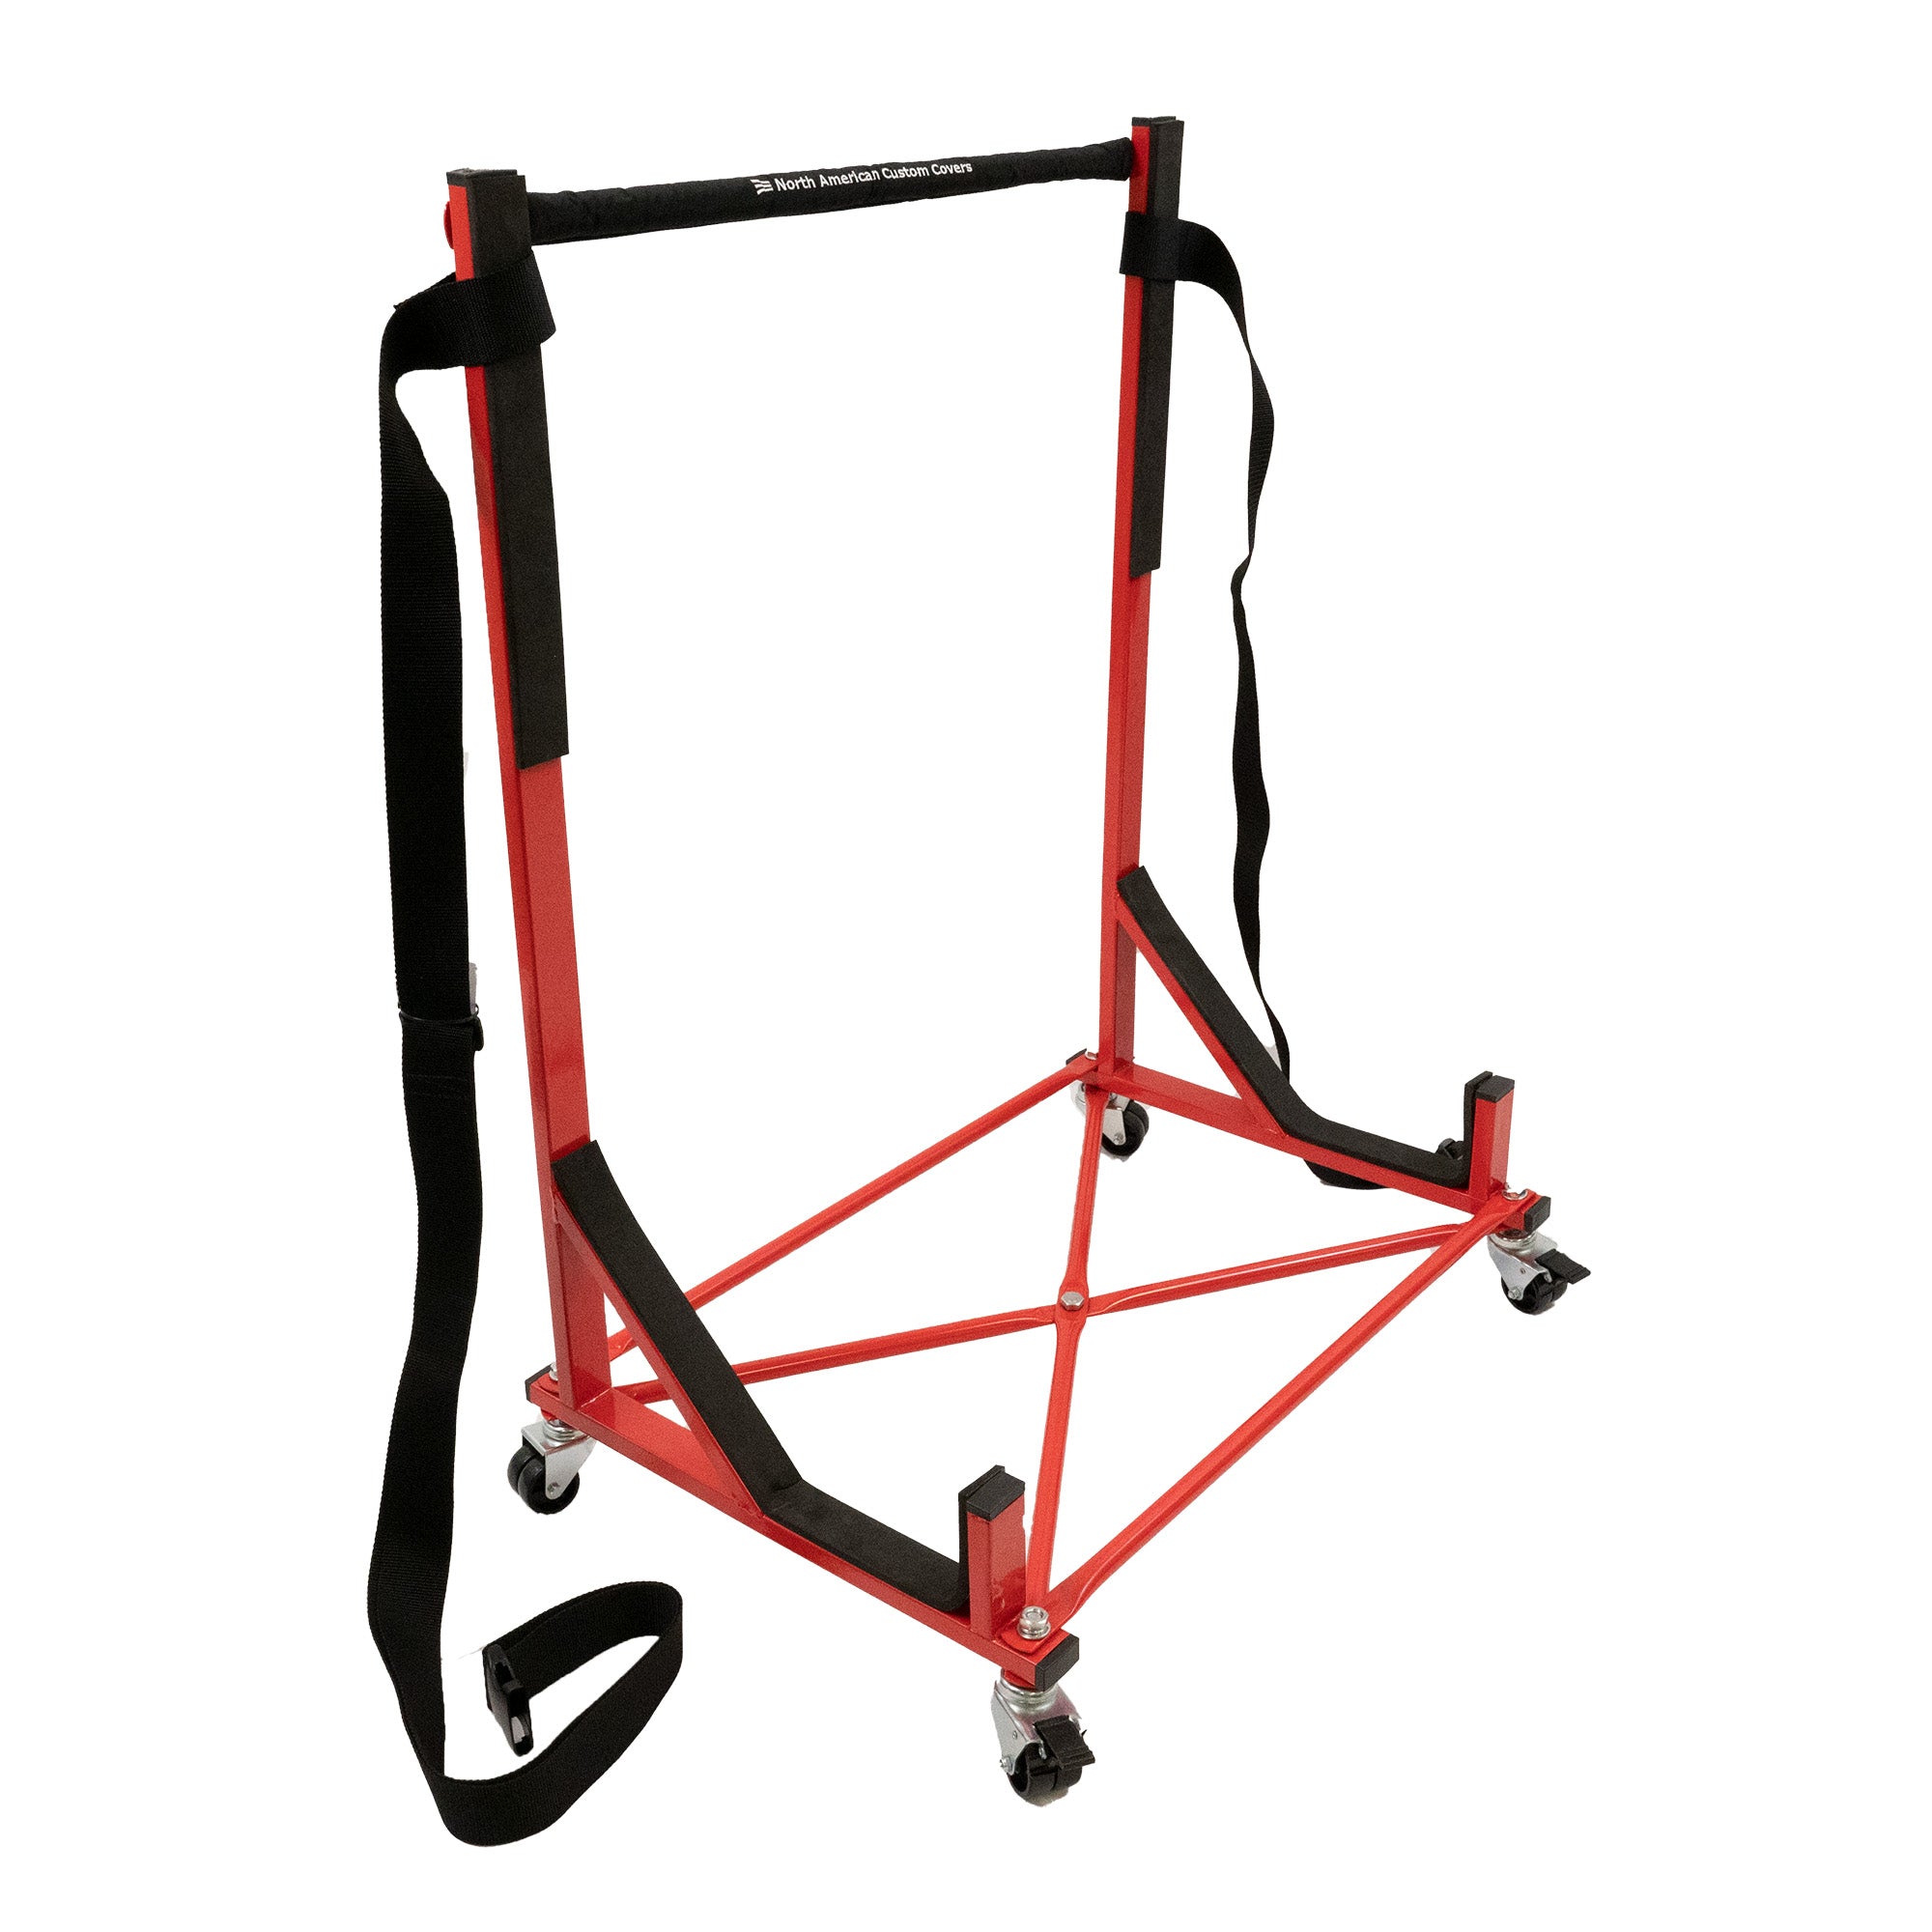 Support de chariot à support rigide robuste (rouge) avec harnais de sécurité, couvercle de barre supérieure et couvercle anti-poussière rigide de taille normale (050R)